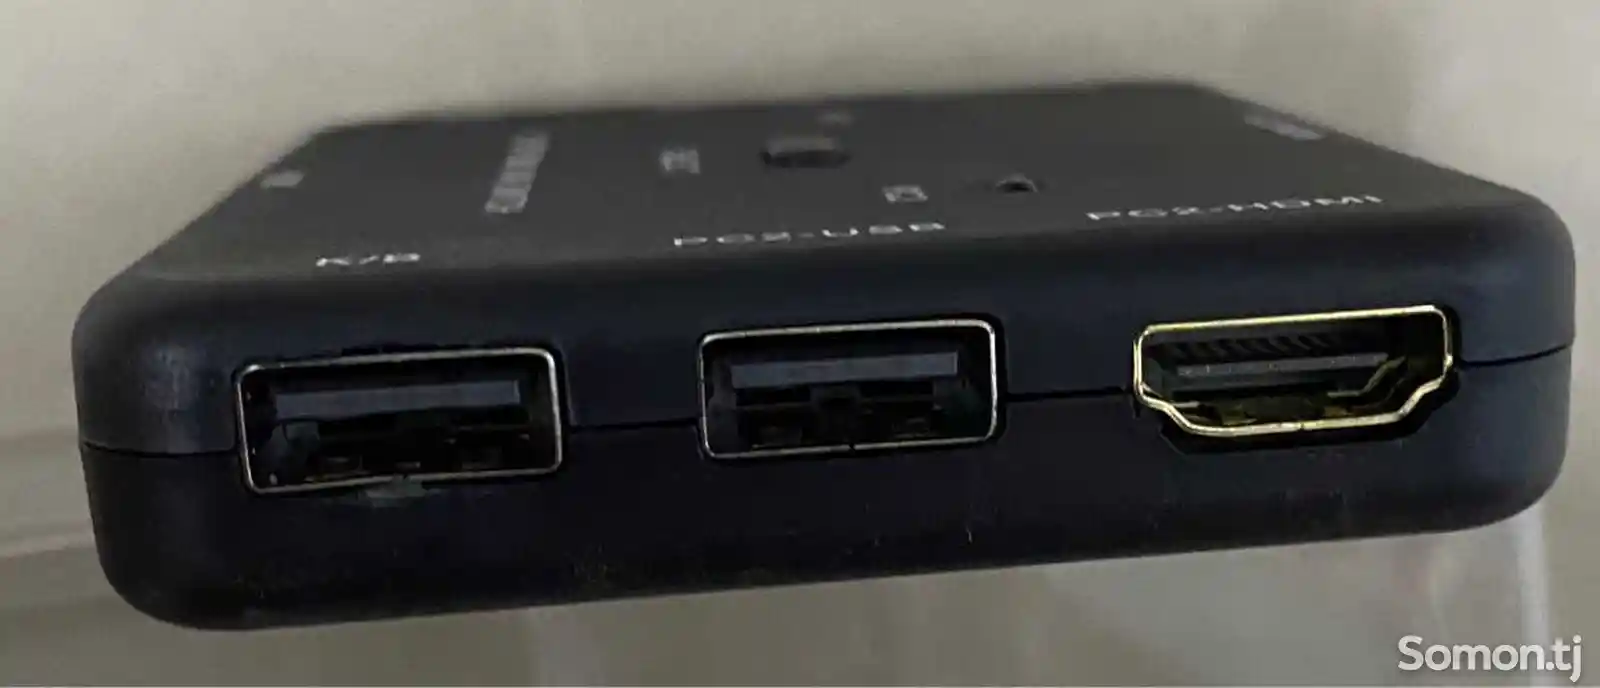 Адаптер HDMI Kvm Switch+Usb-4